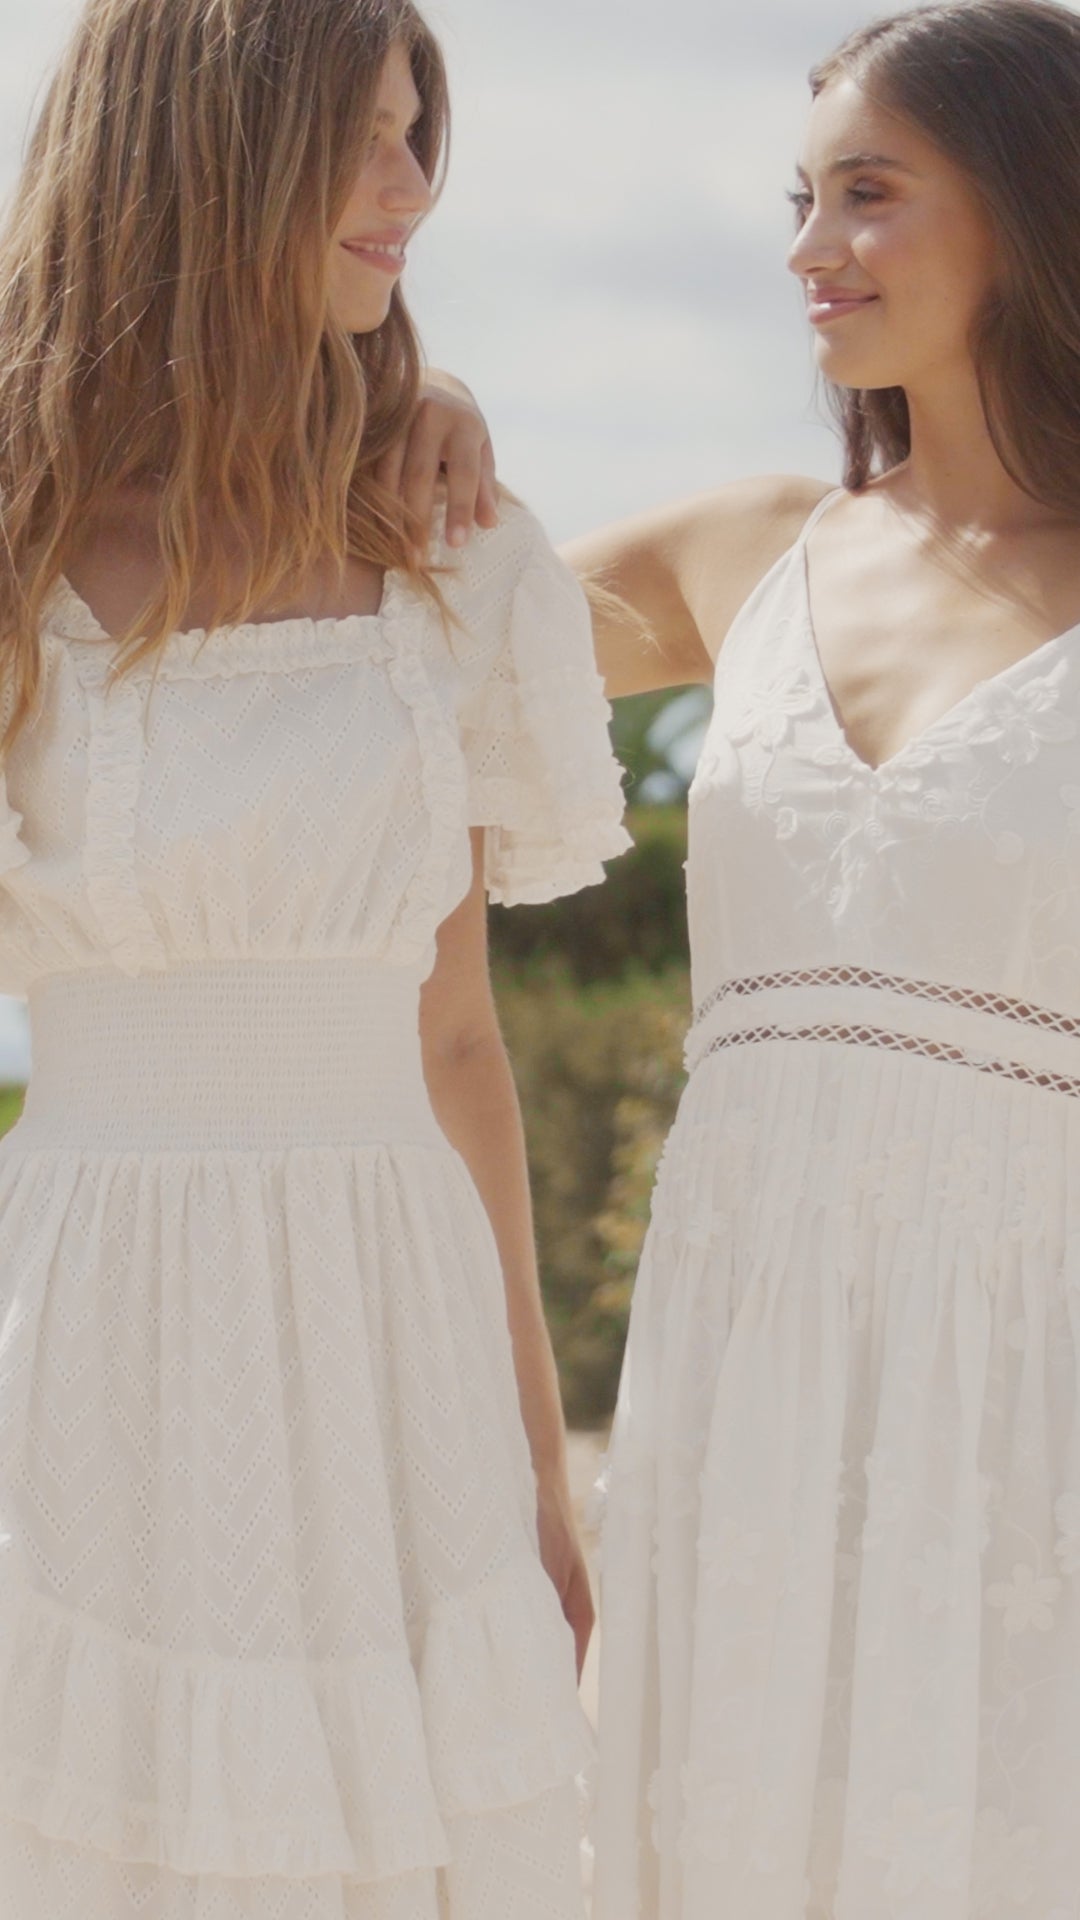 Pippa Mini Dress White